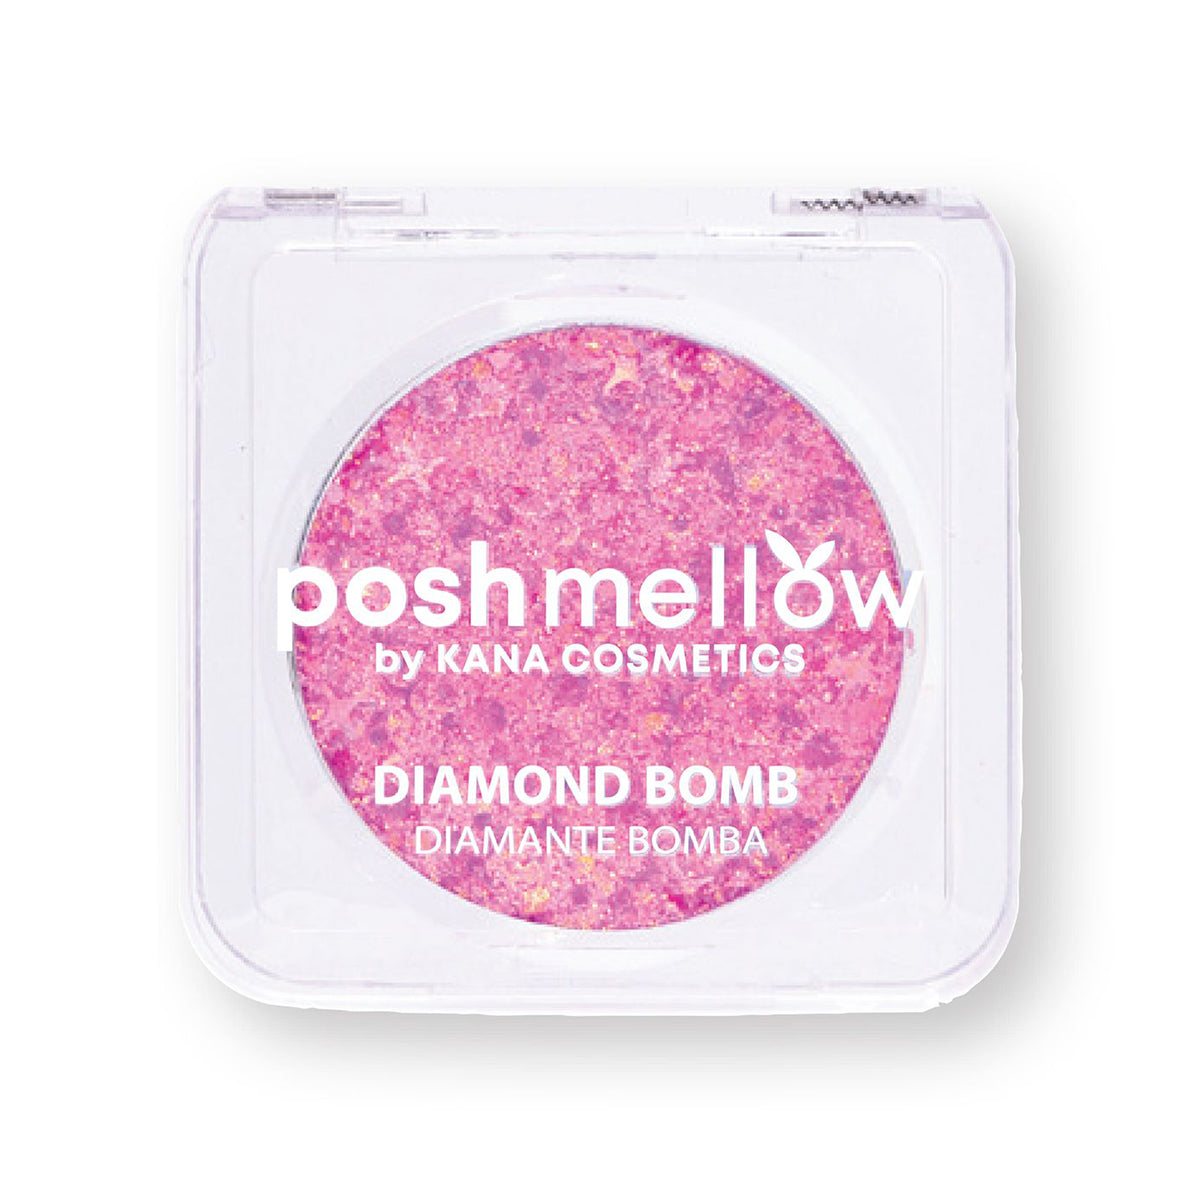 Diamond Bomb: Pixie Pink